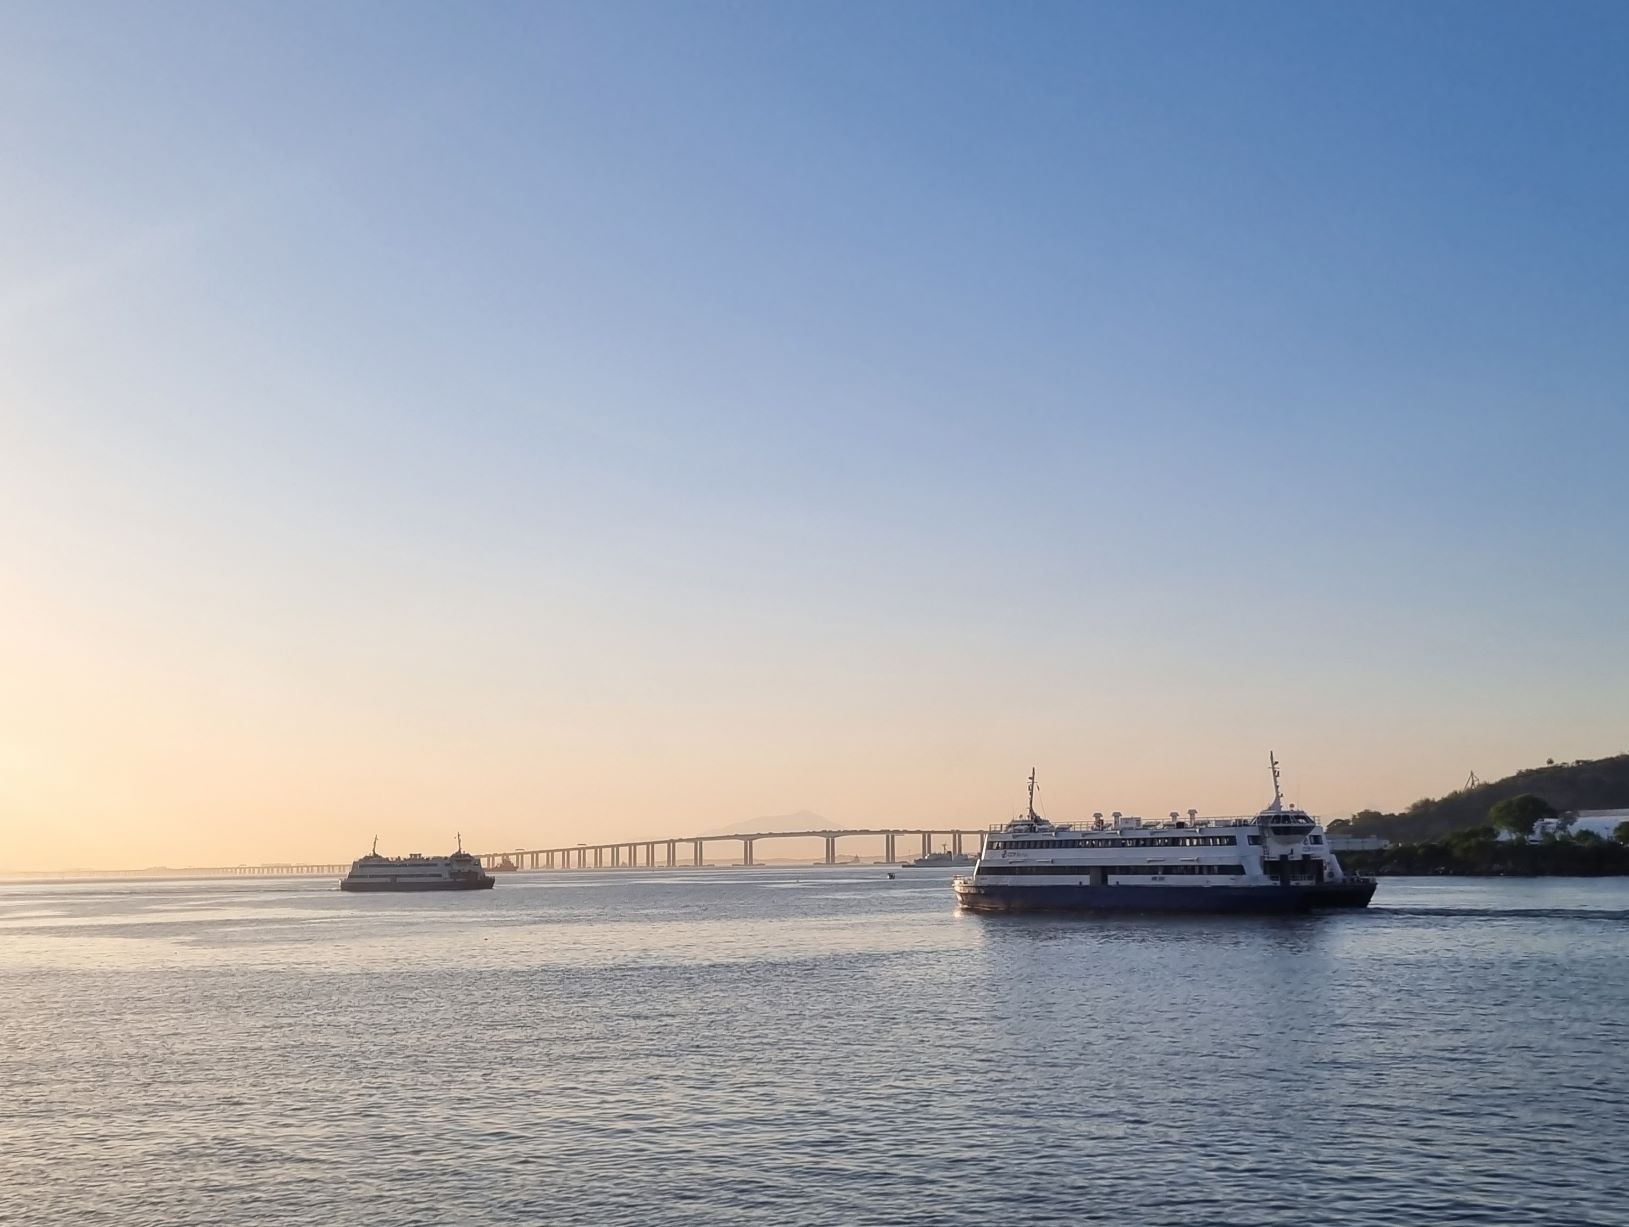 Barcas cruzam a Baía de Guanabara: transporte de decadência levava 200 mil passageiros por dia há 60 anos e hoje carrega em média 35 mil (Foto: Oscar Valporto)